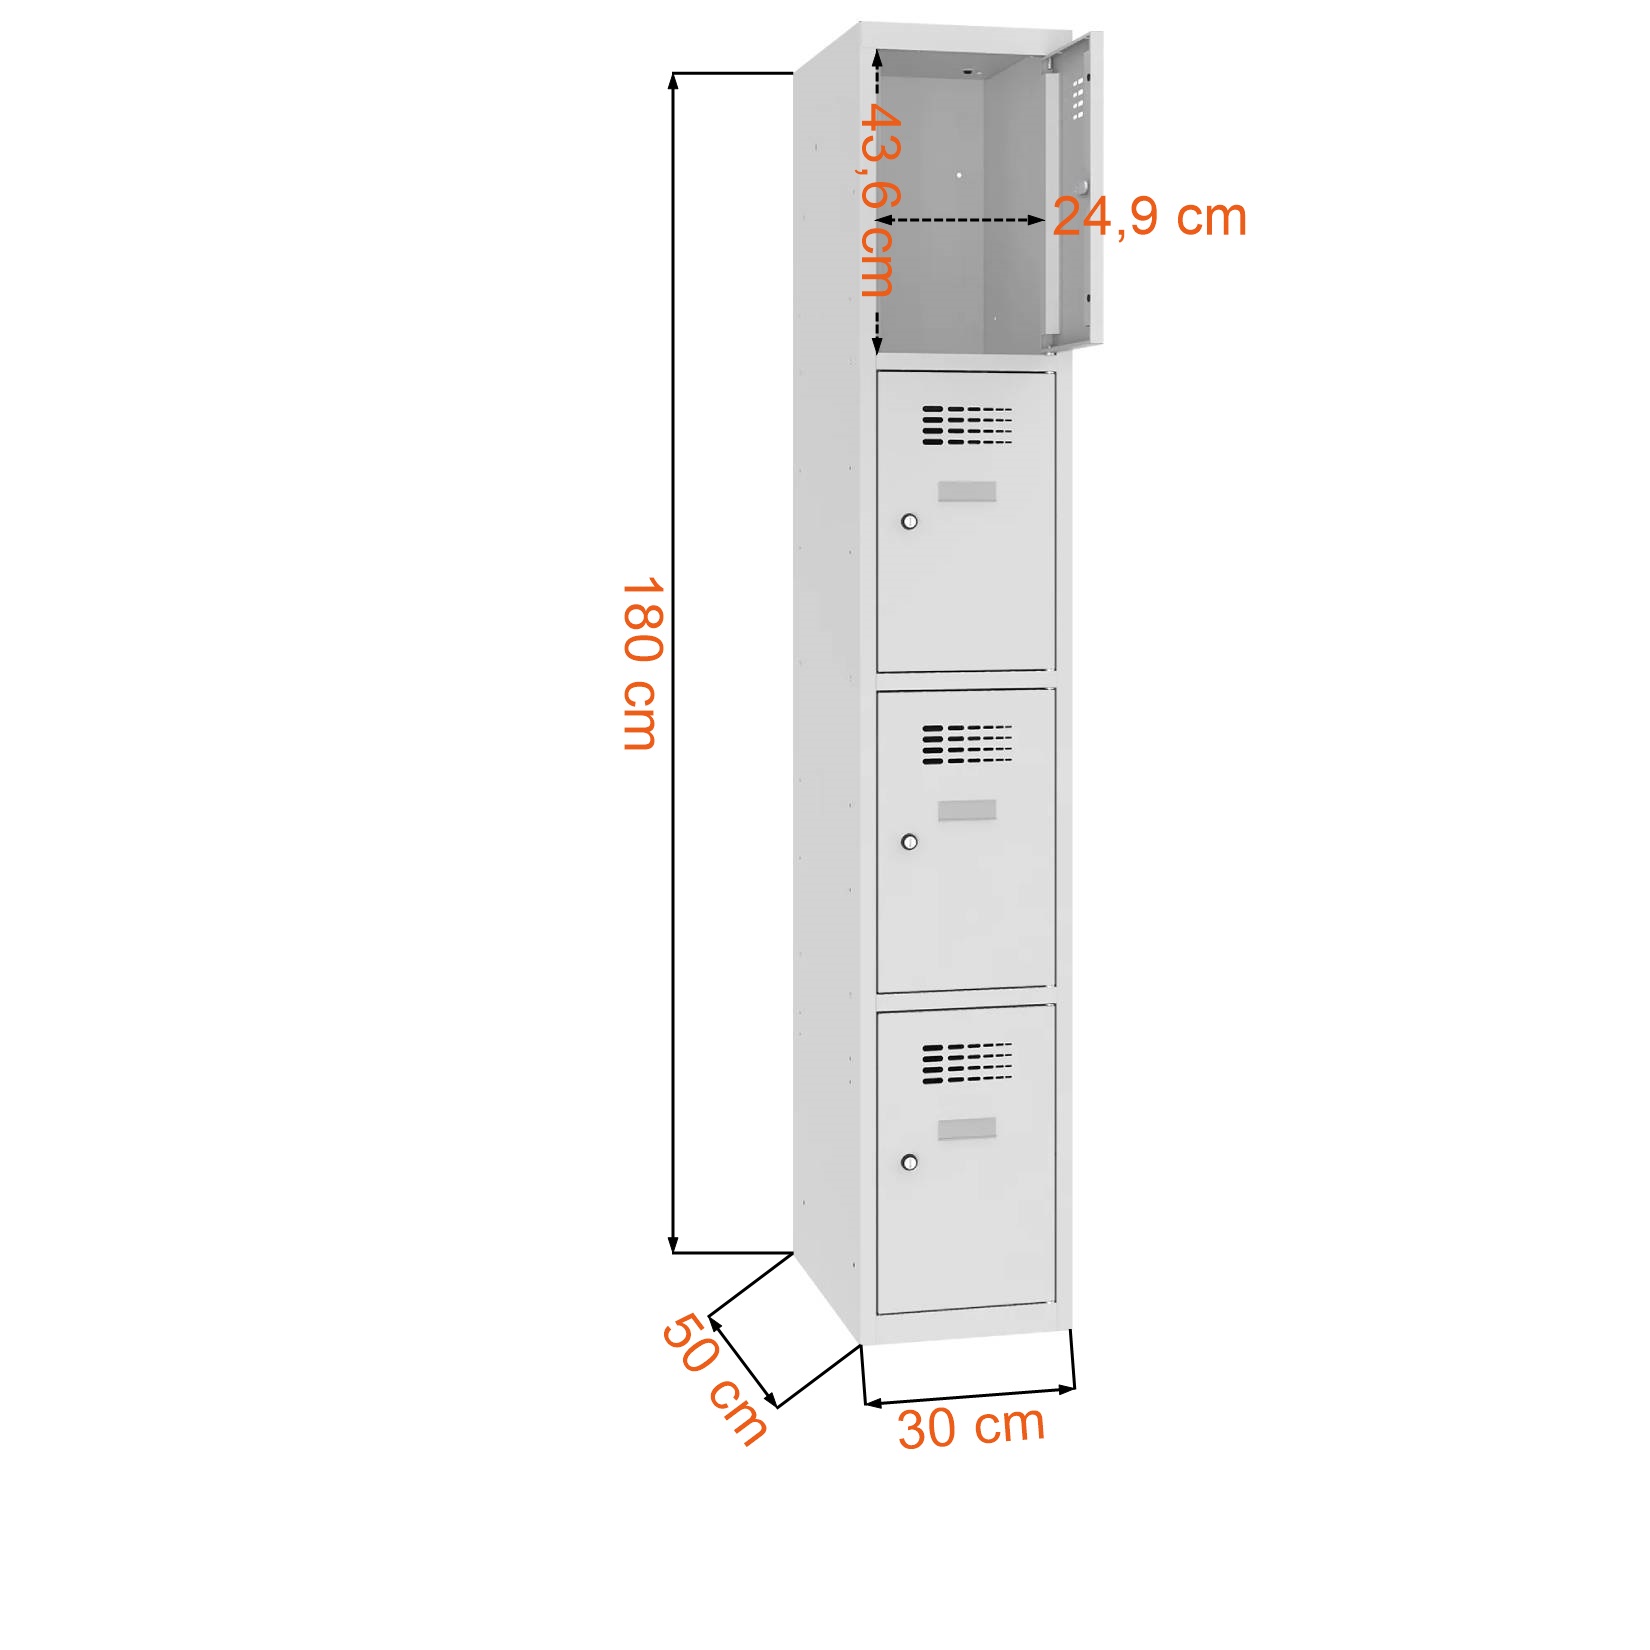 Dane techniczne i wymiary szafki śniadaniowej SUS 314 W ST